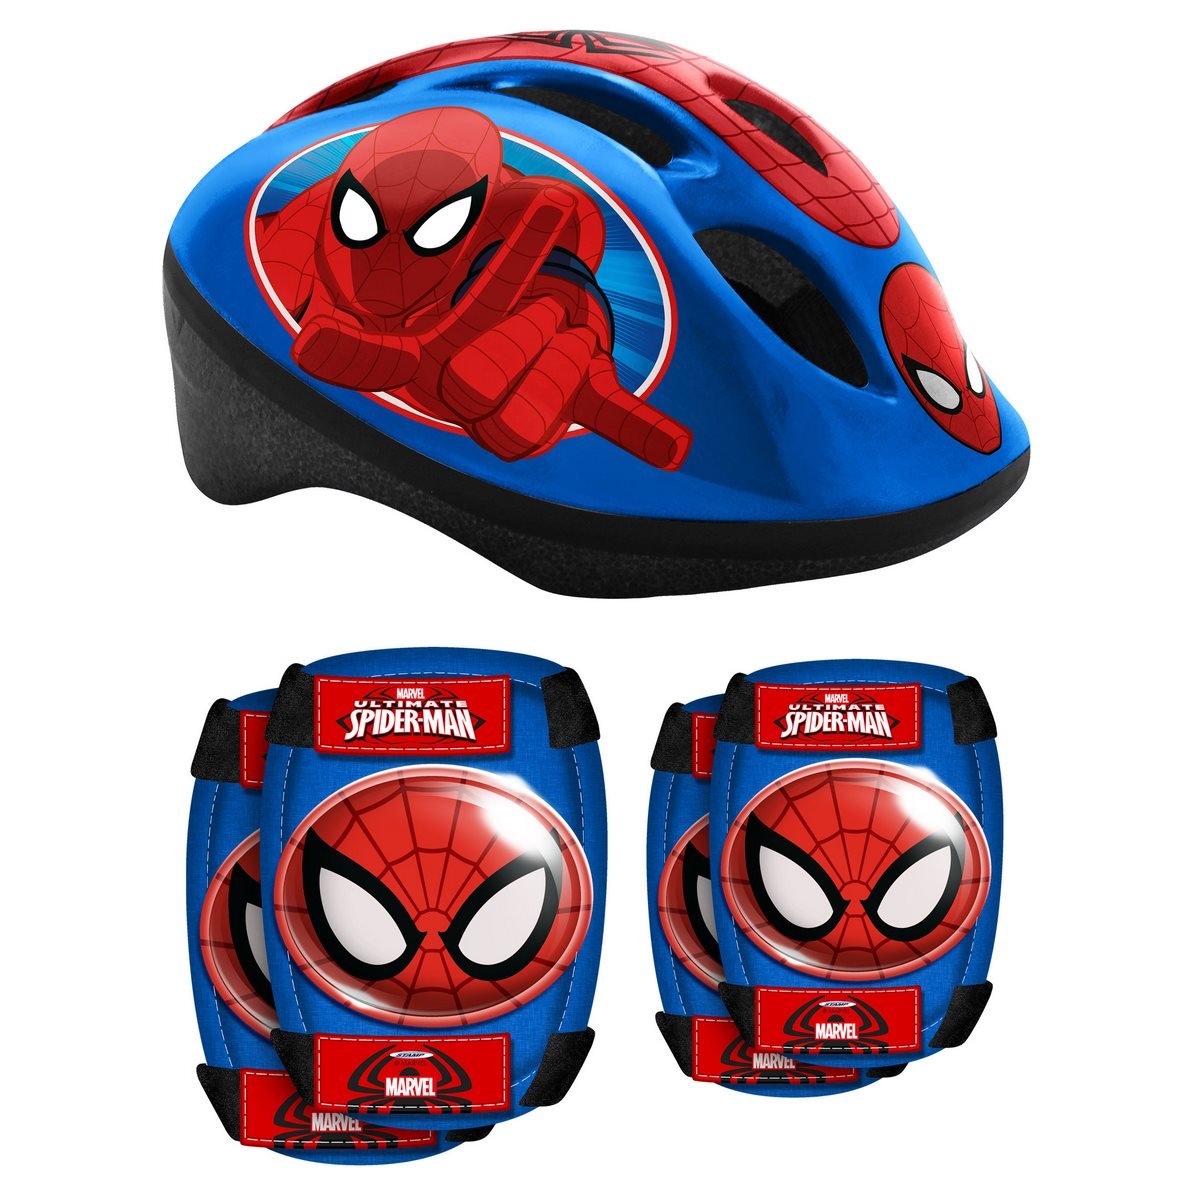 Casque de vélo enfant Spider-Man Mondo : King Jouet, Casques et protections  Mondo - Jeux Sportifs